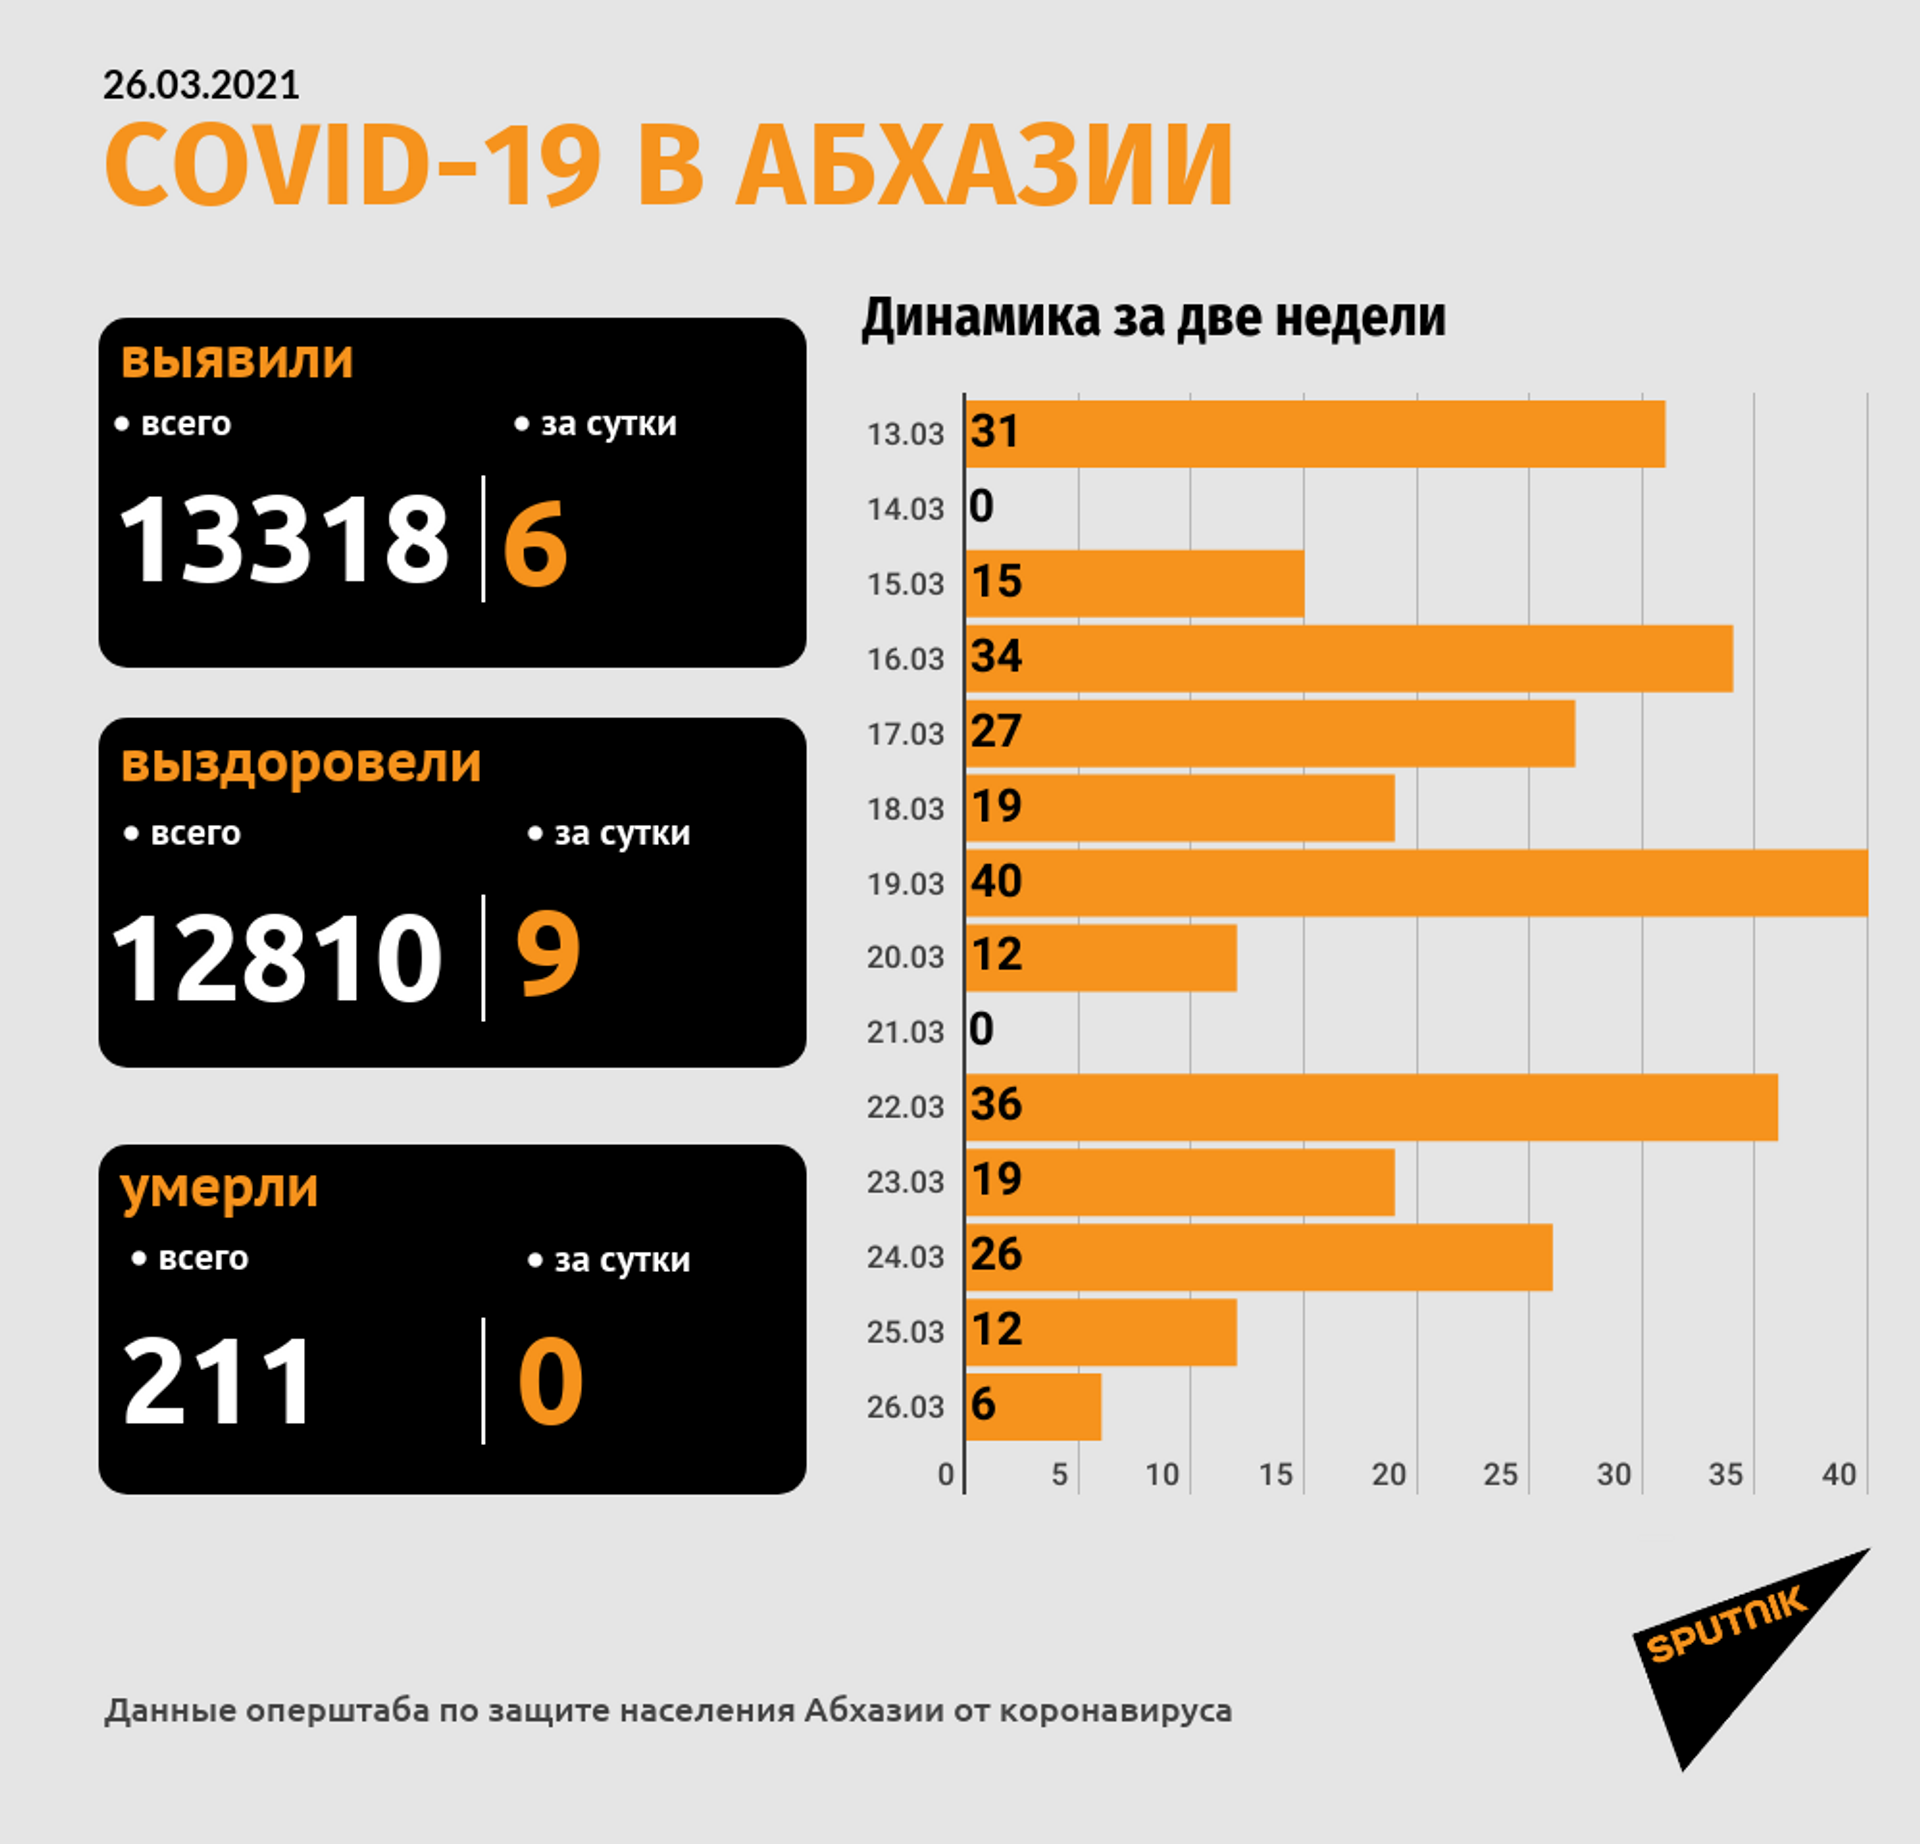 Суточный прирост числа случаев COVID-19 в Абхазии оказался меньше десяти - Sputnik Абхазия, 1920, 26.03.2021